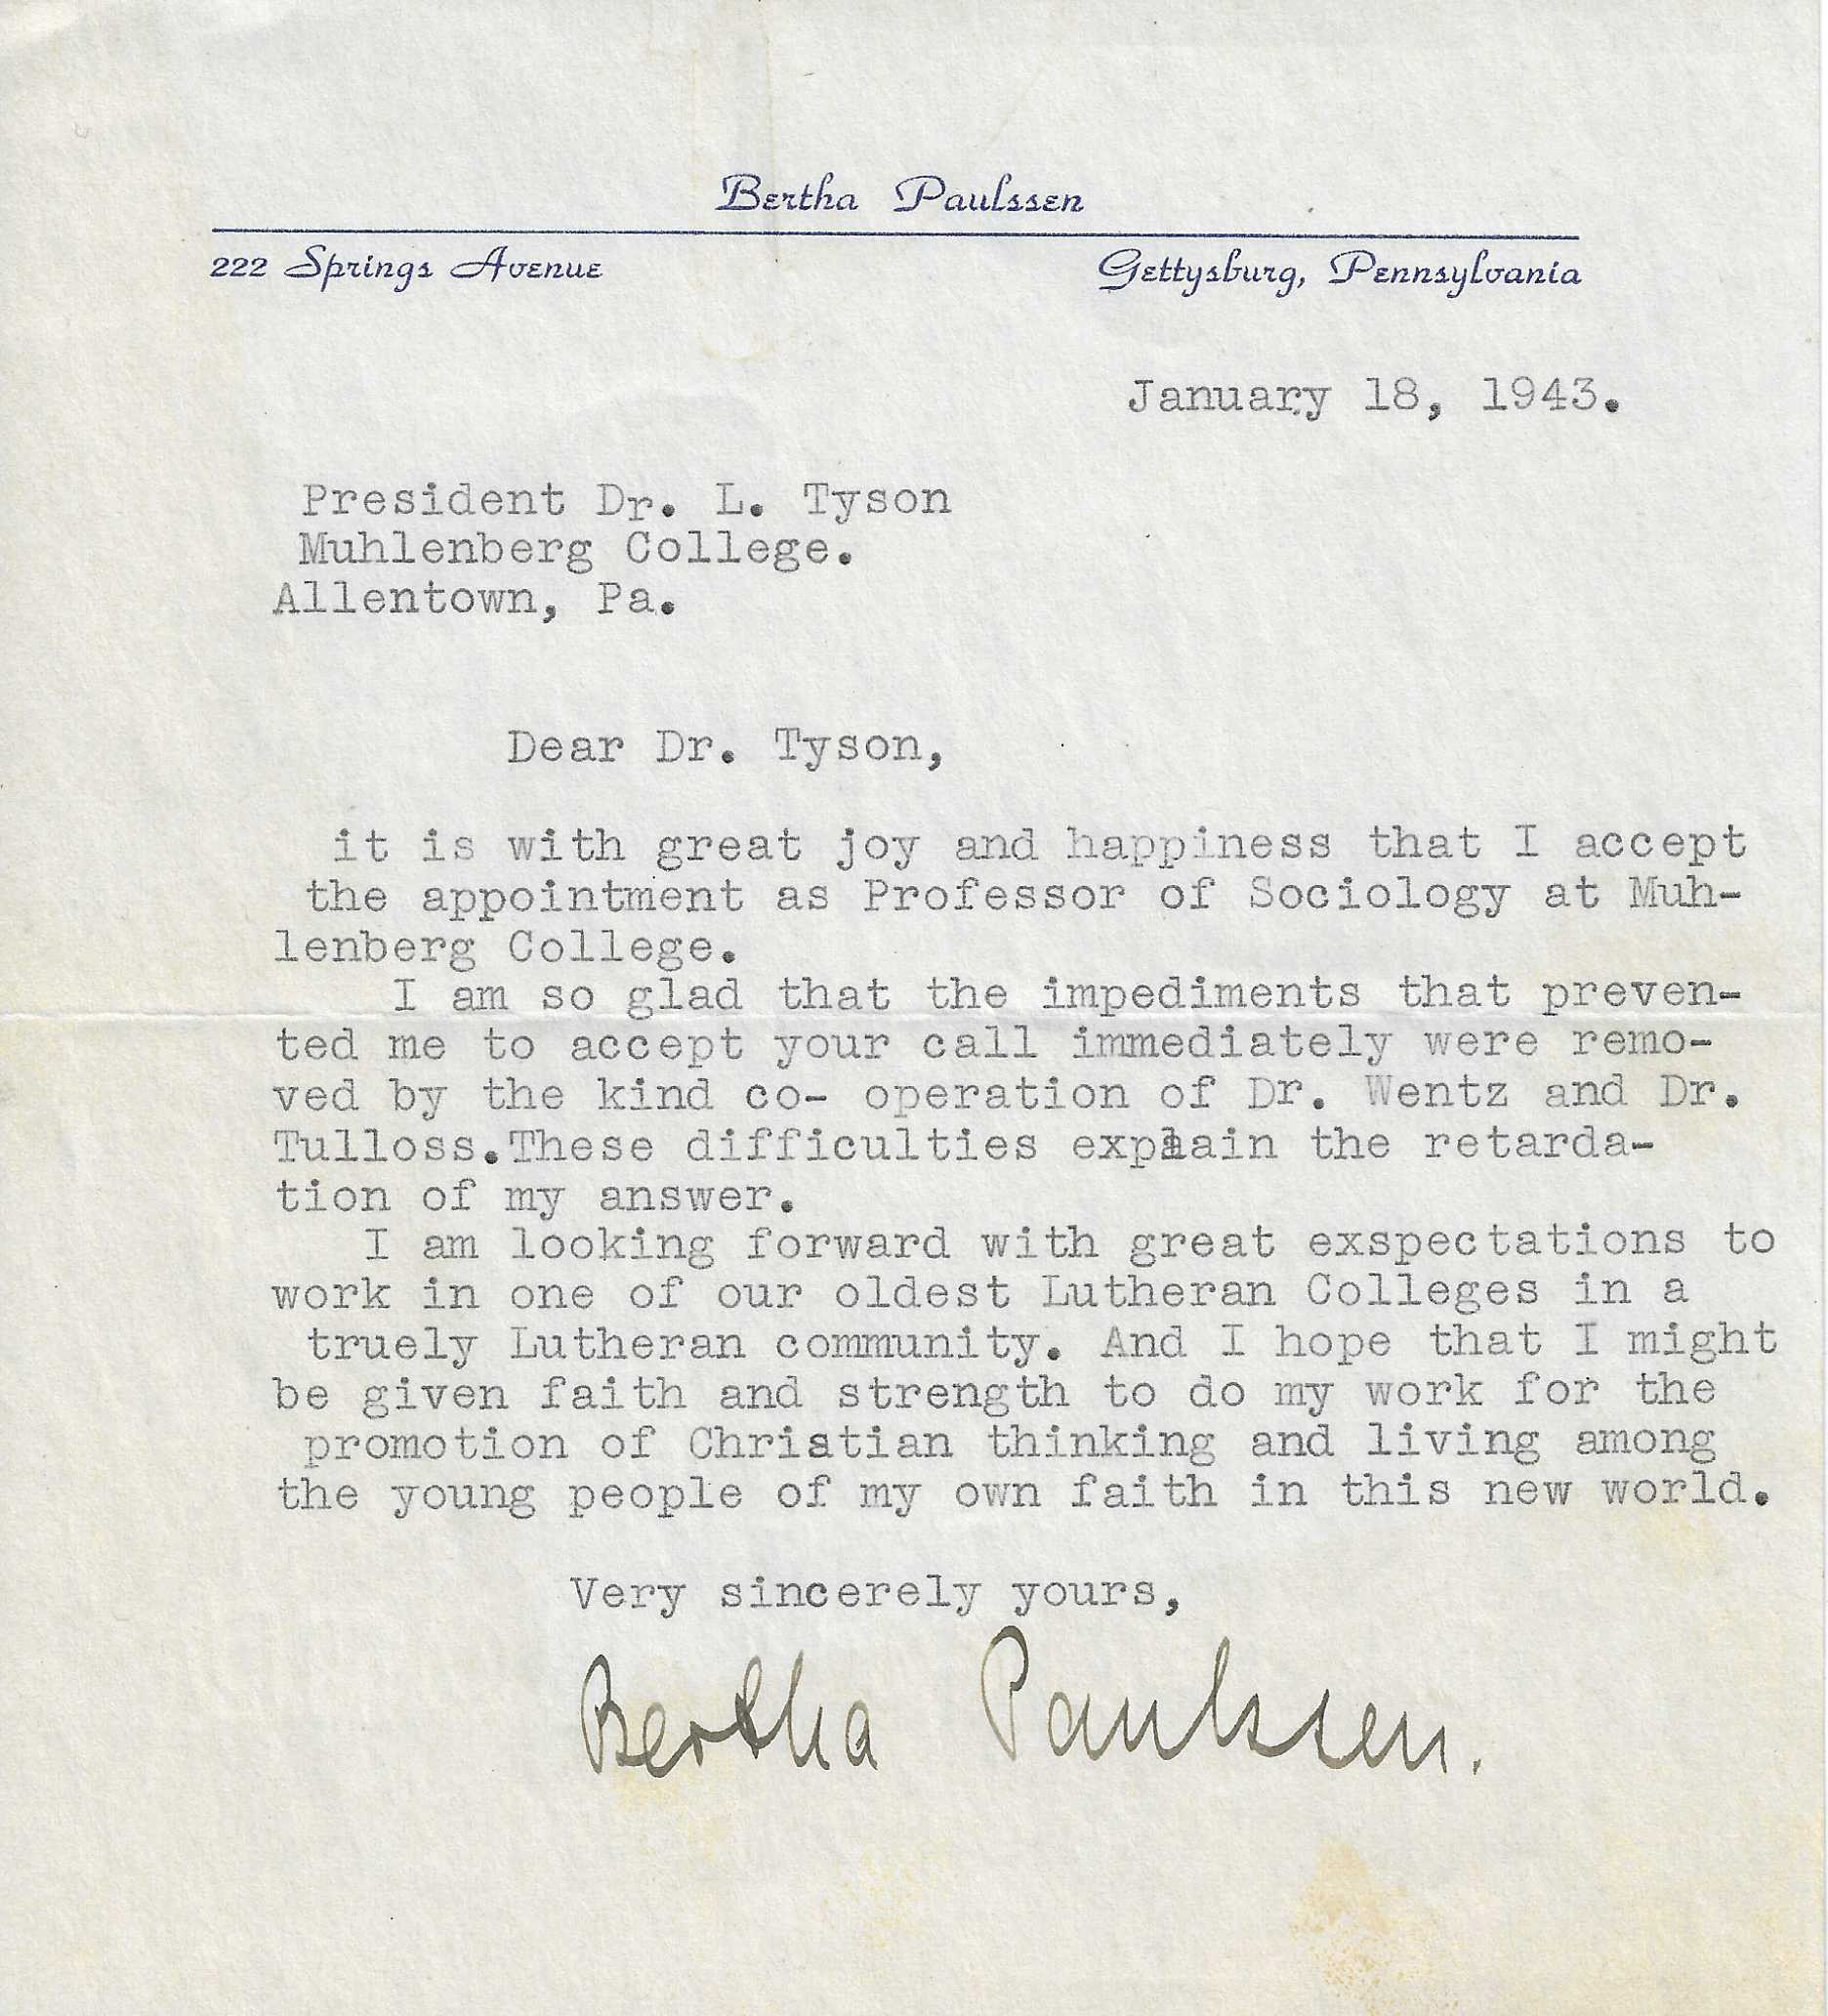 Dr. Paulssen's acceptance letter, 1943